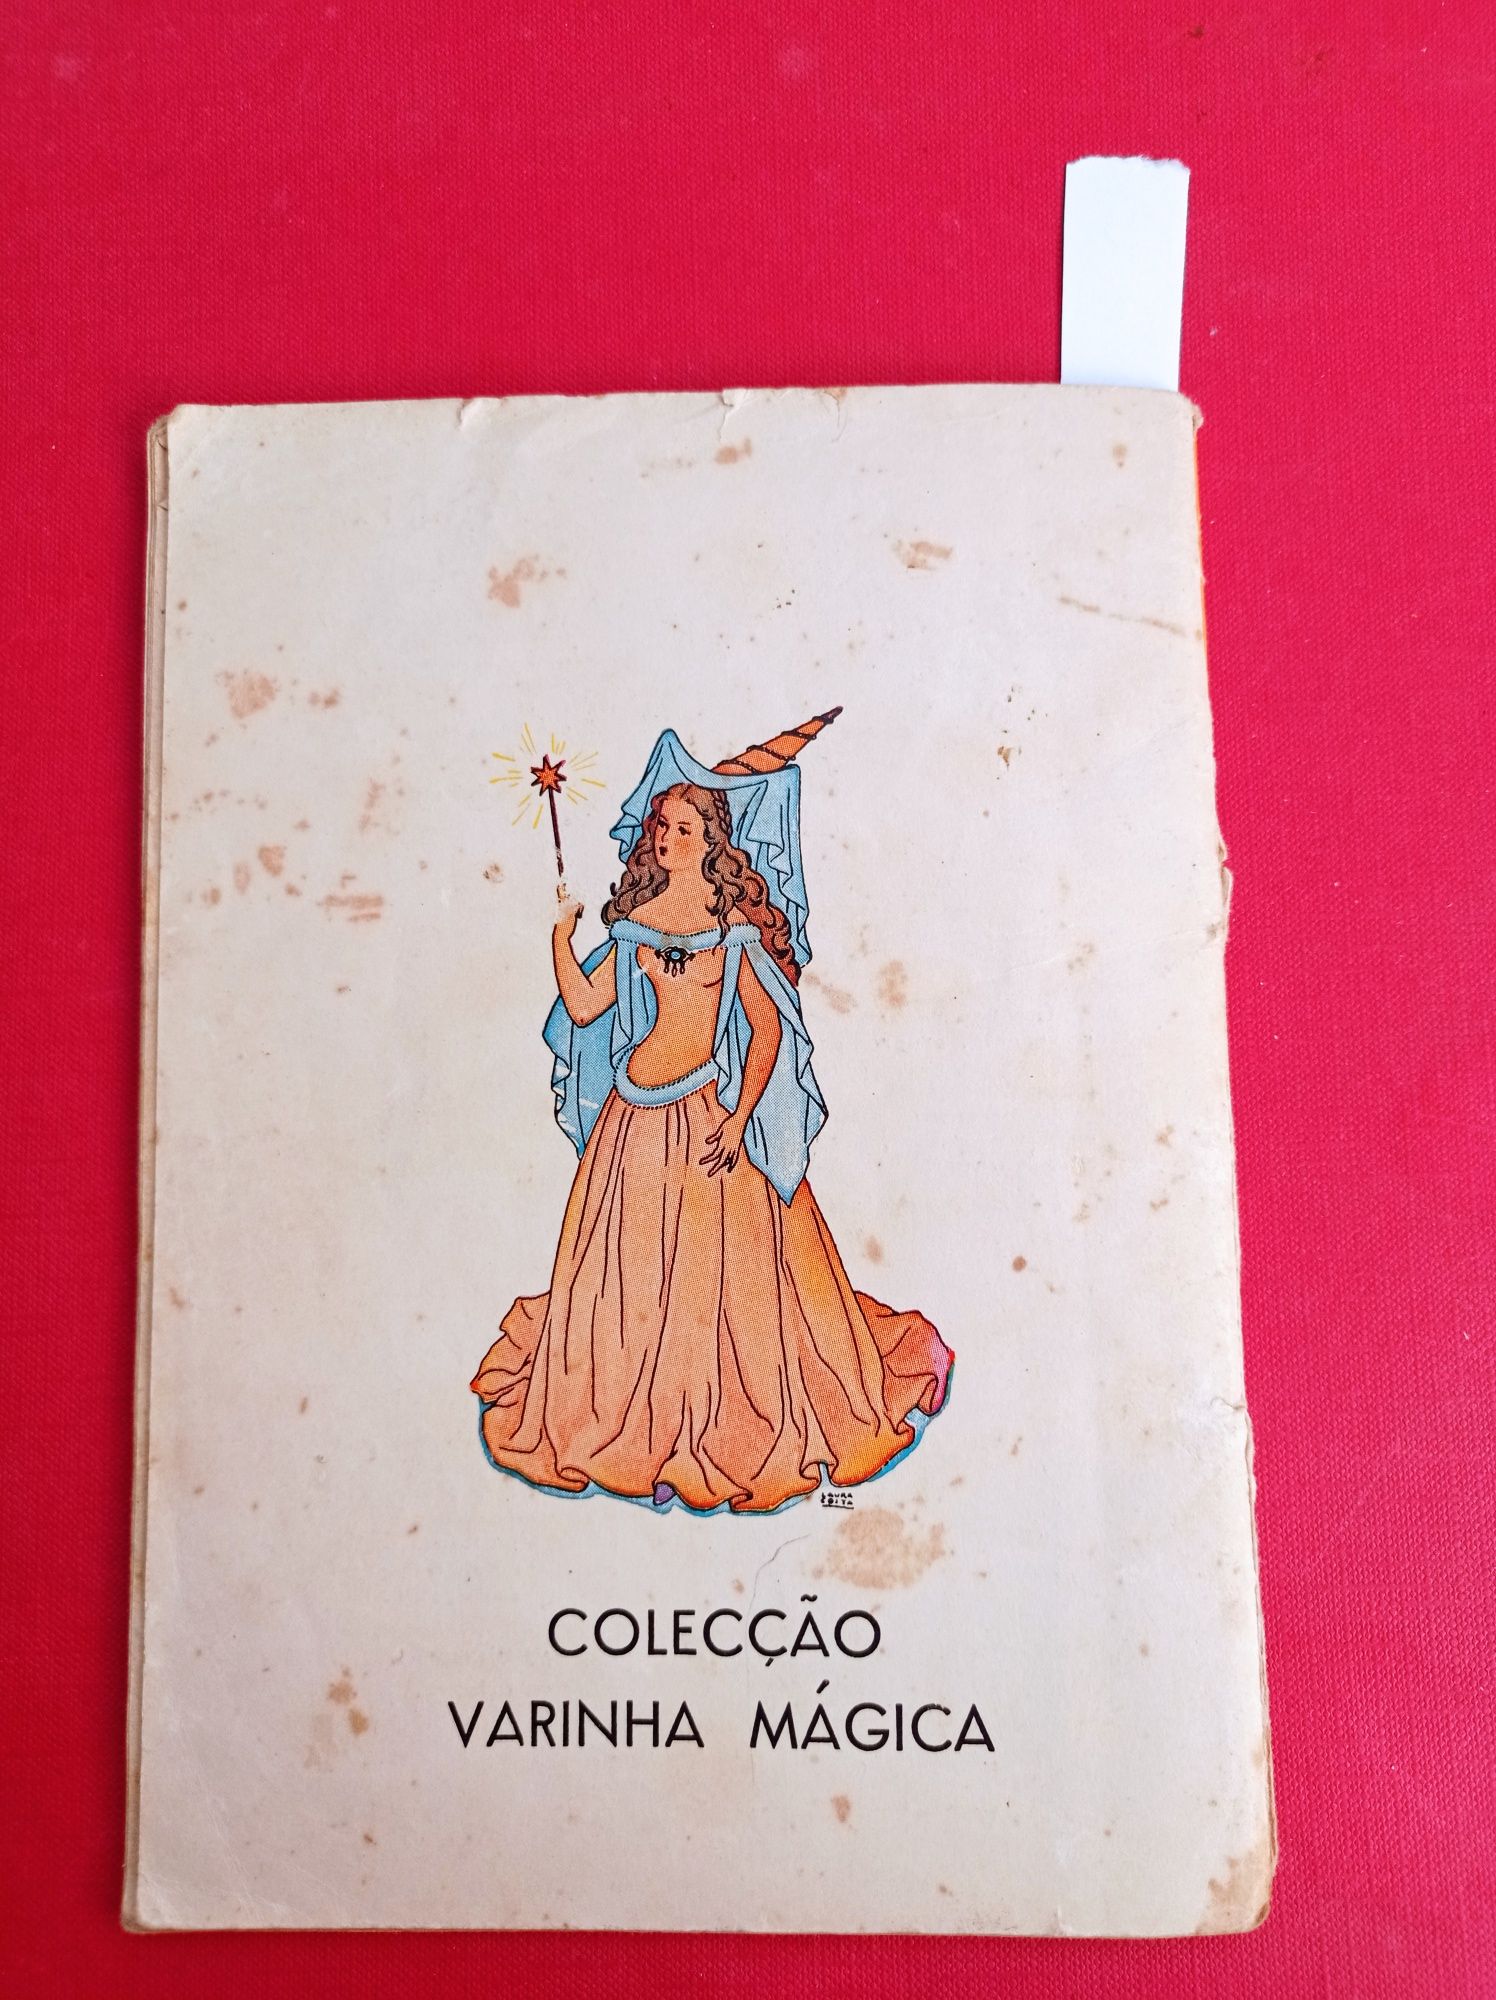 Livro  Majora, Coleção Varinha Mágica.

Livro em bom estado gera